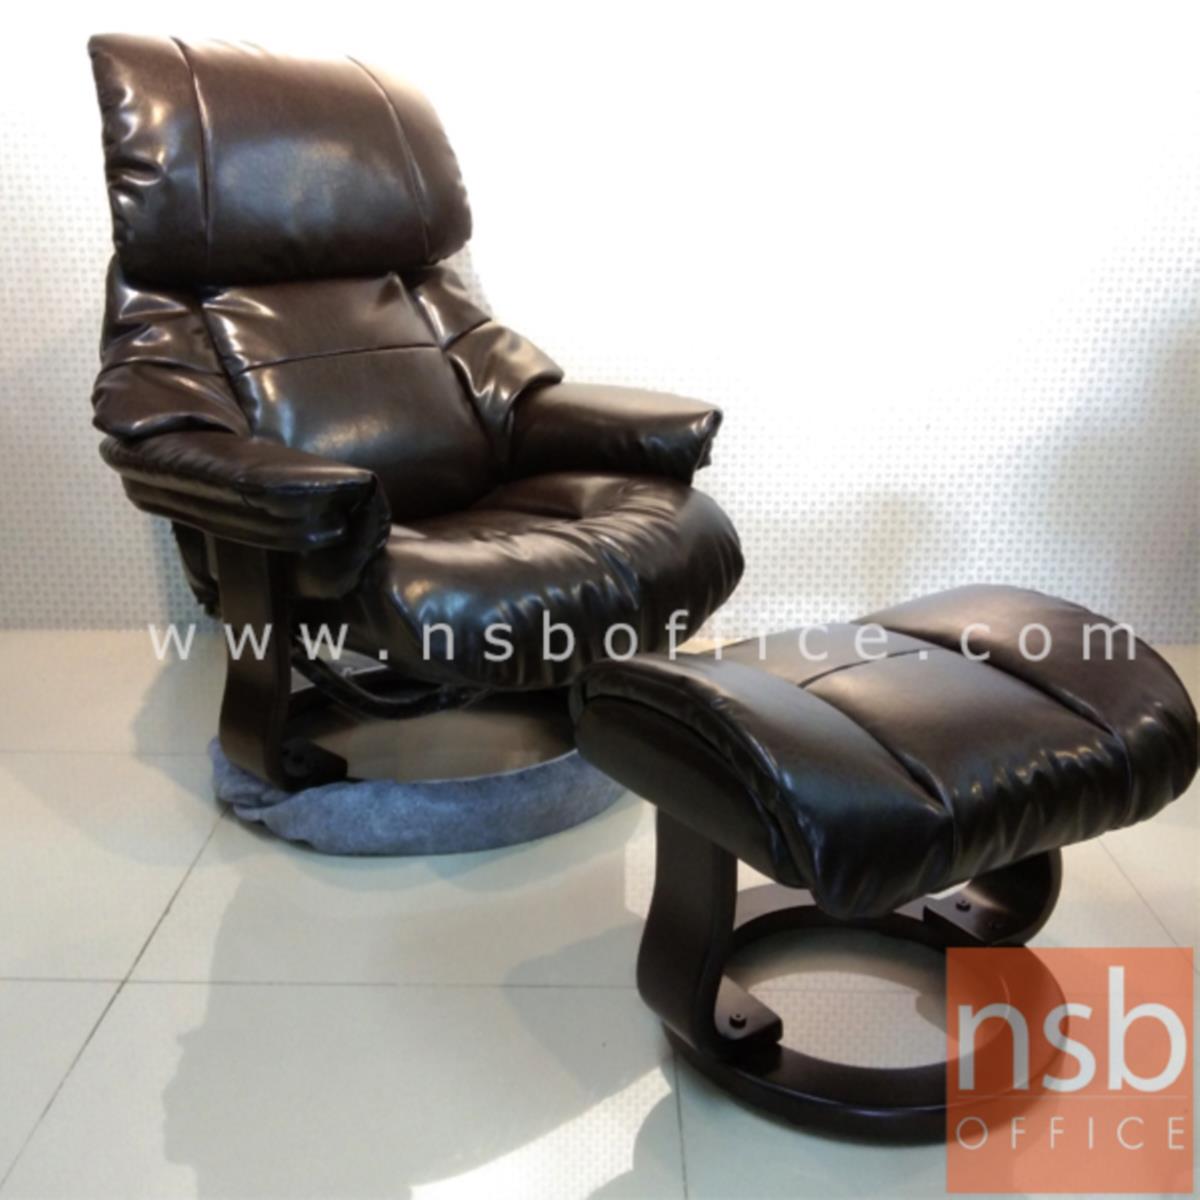 B15A027:เก้าอี้พักผ่อนหนังไบแคส  รุ่น Ritchie (ริตชี) ขนาด 80W cm. พร้อมที่วางเท้า